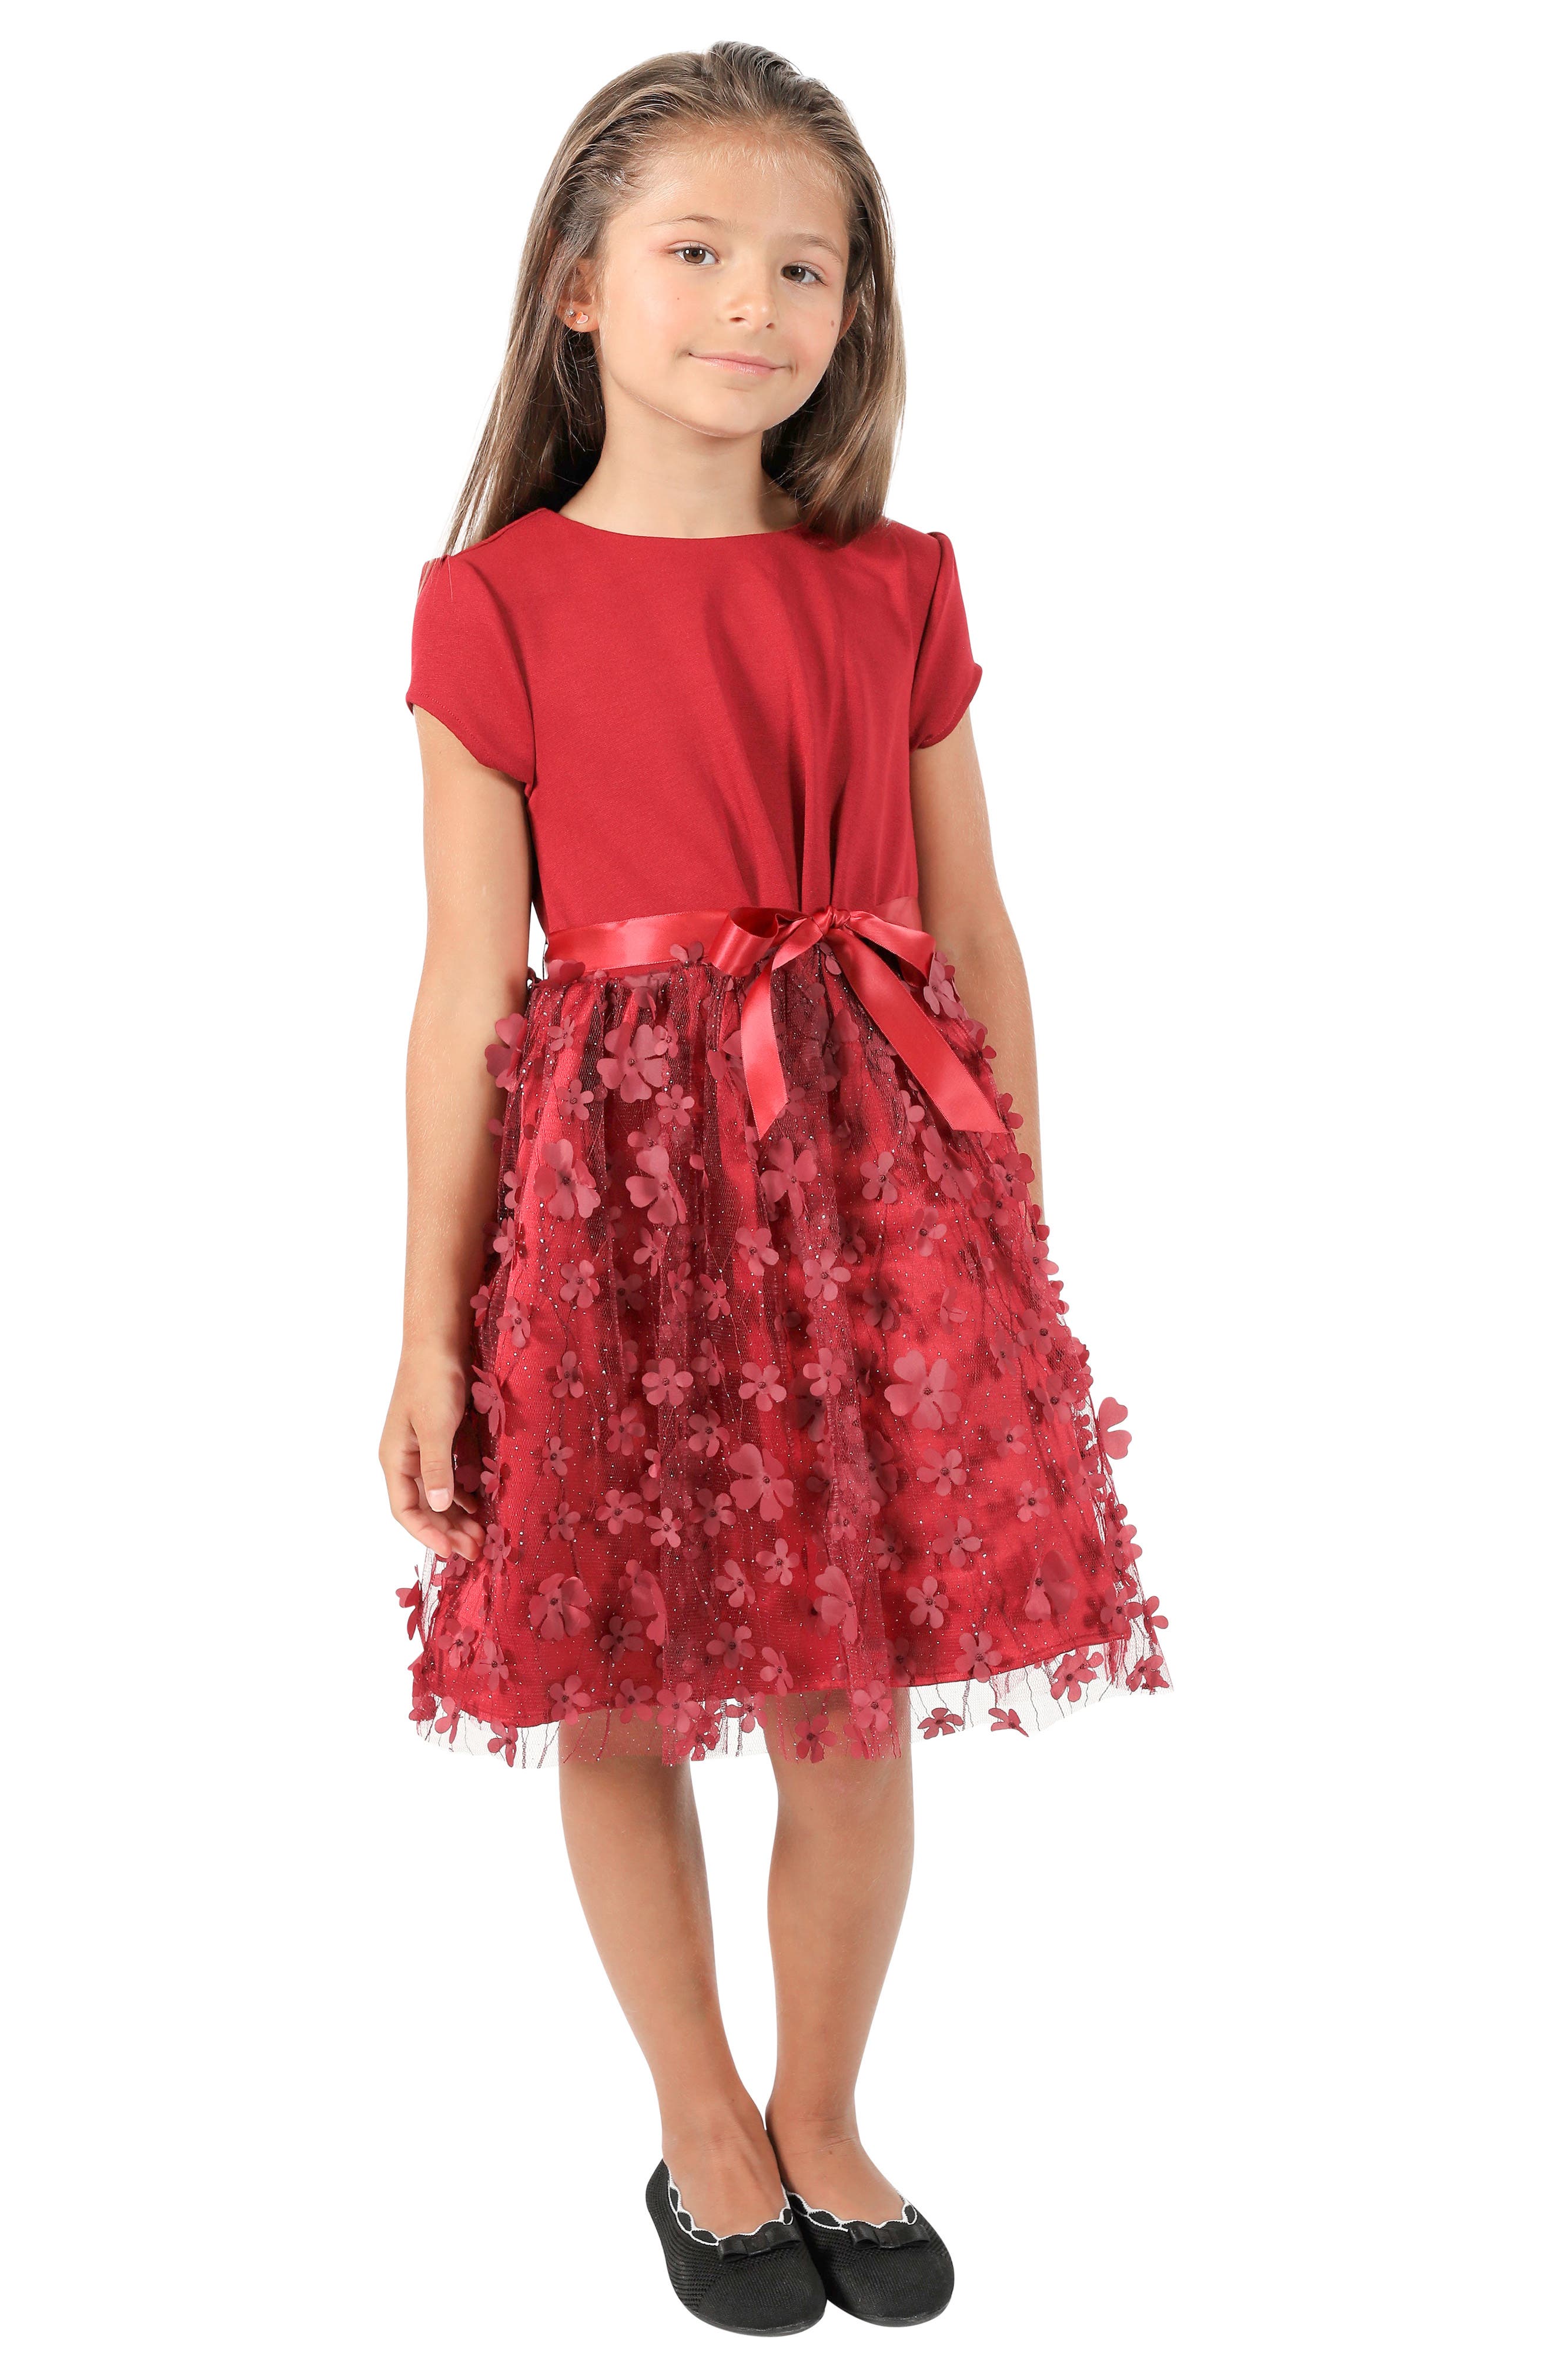 girls red dress